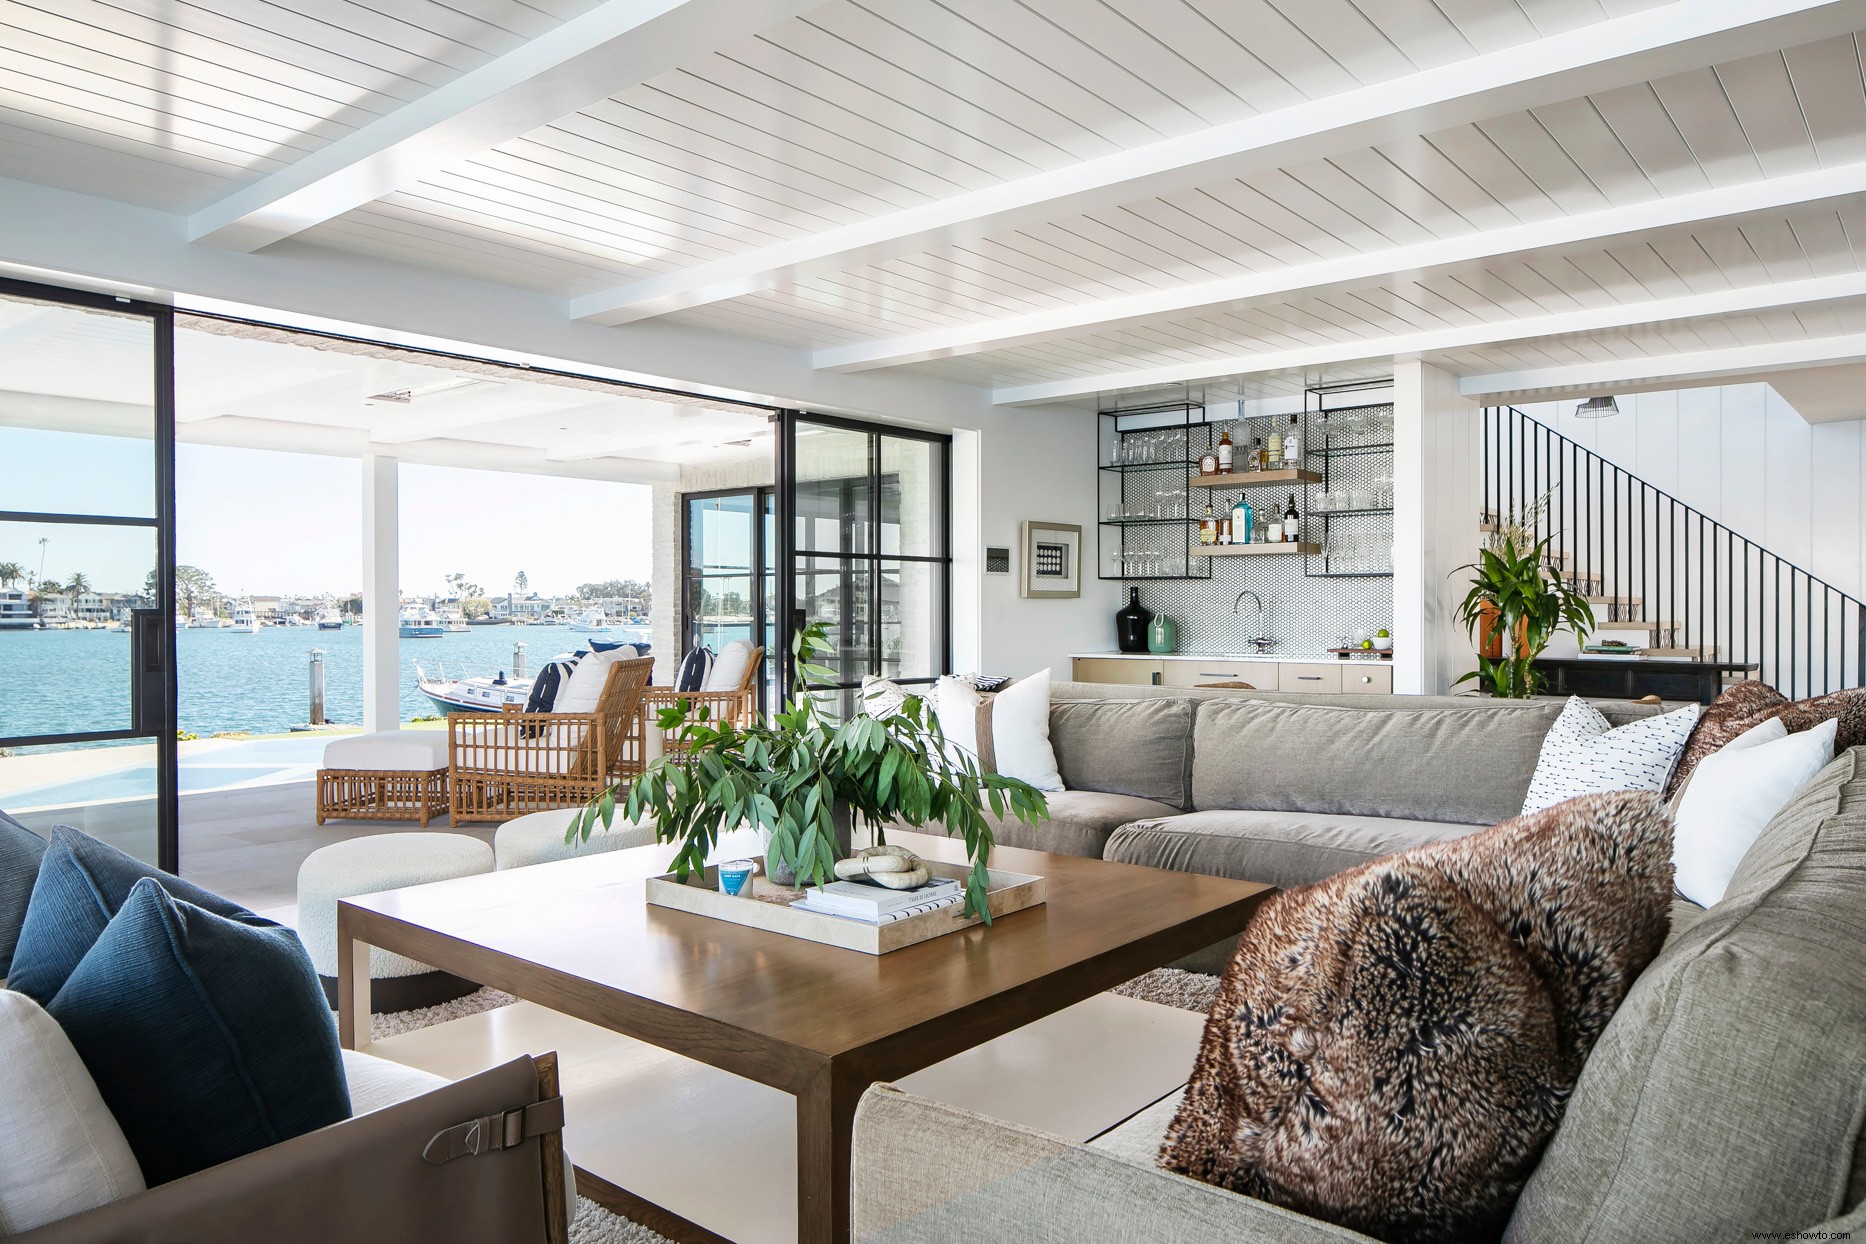 Las actualizaciones modernas transforman este bungalow de playa de la década de 1940 con un estilo costero ventoso 